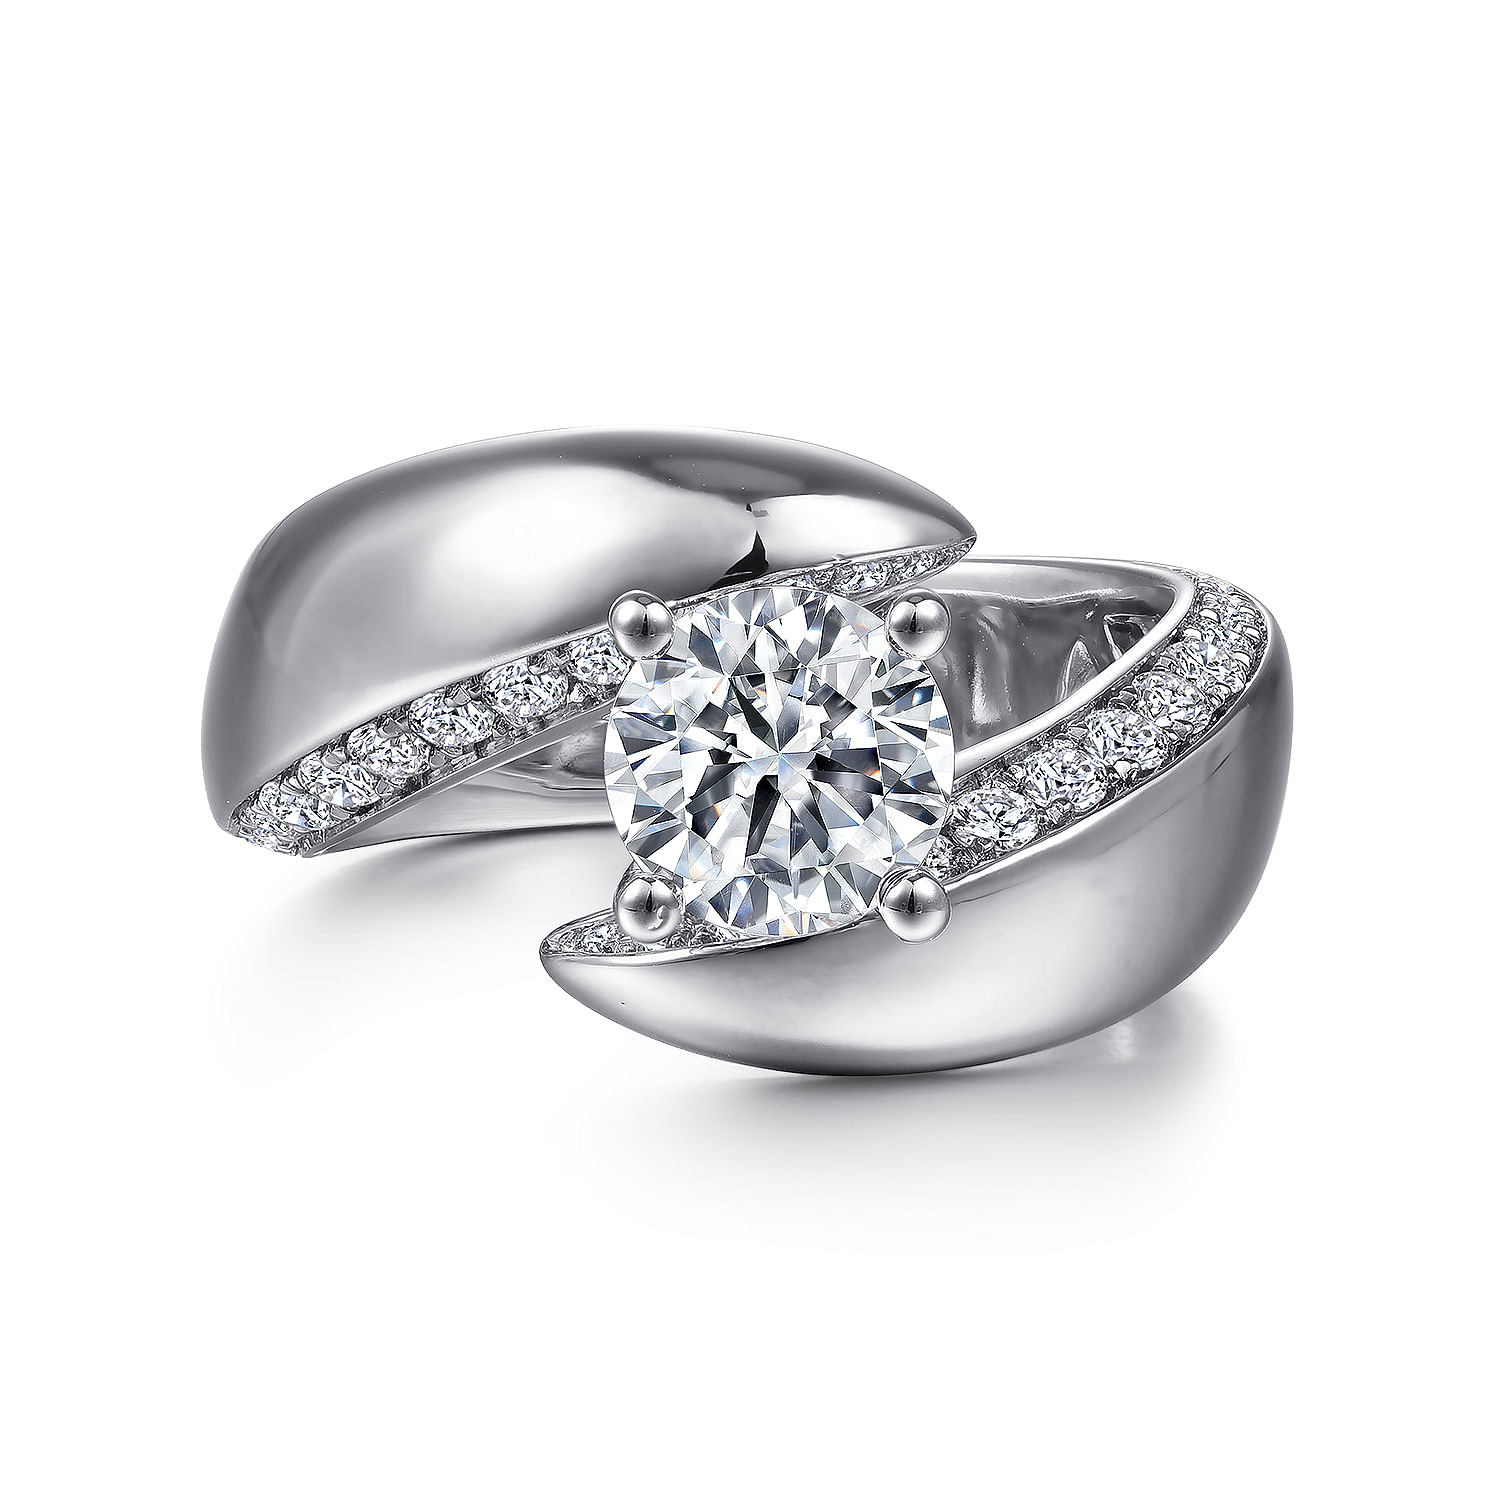 Hepburn---14K-White-Gold-Round-Bypass-Diamond-Engagement-Ring1